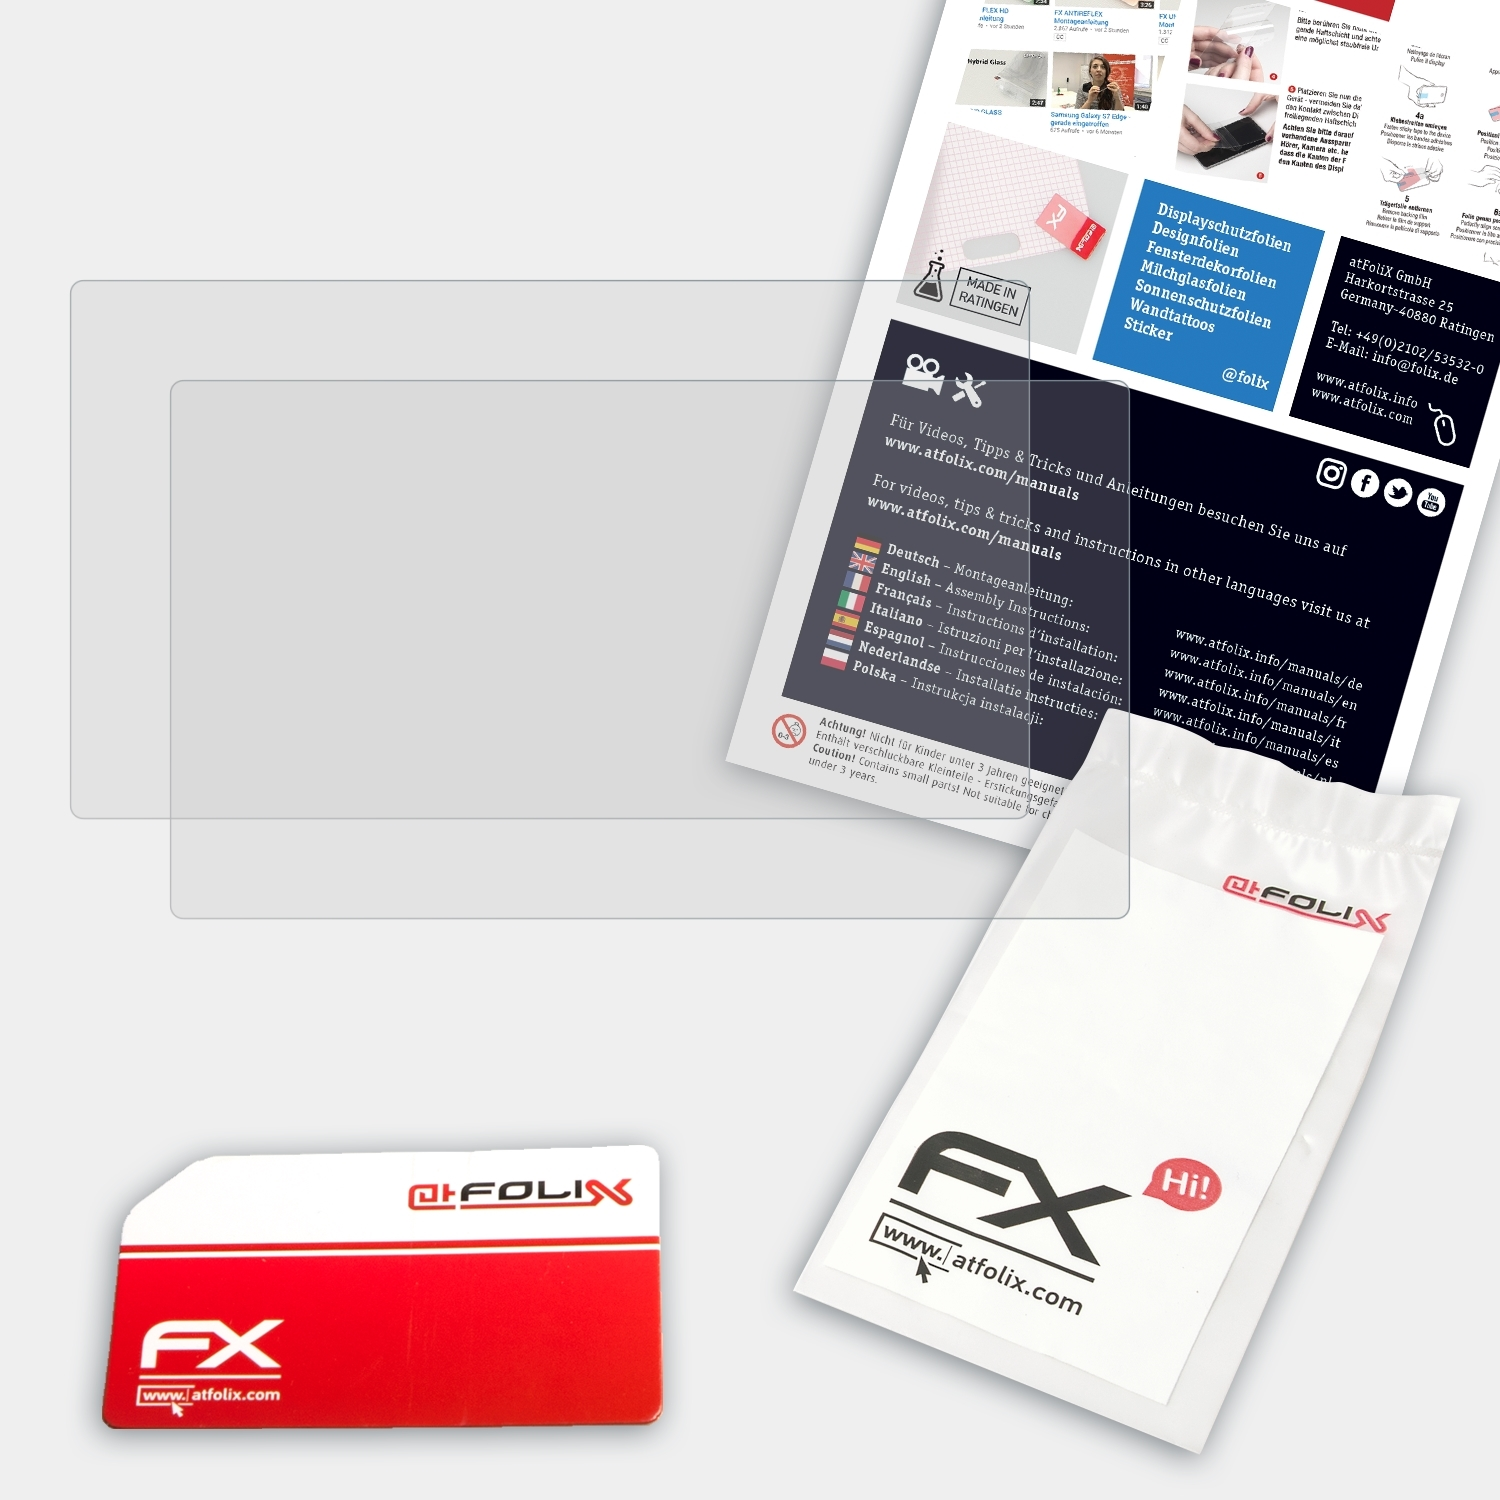 ATFOLIX 2x FX-Antireflex Casio EWG570C) Displayschutz(für